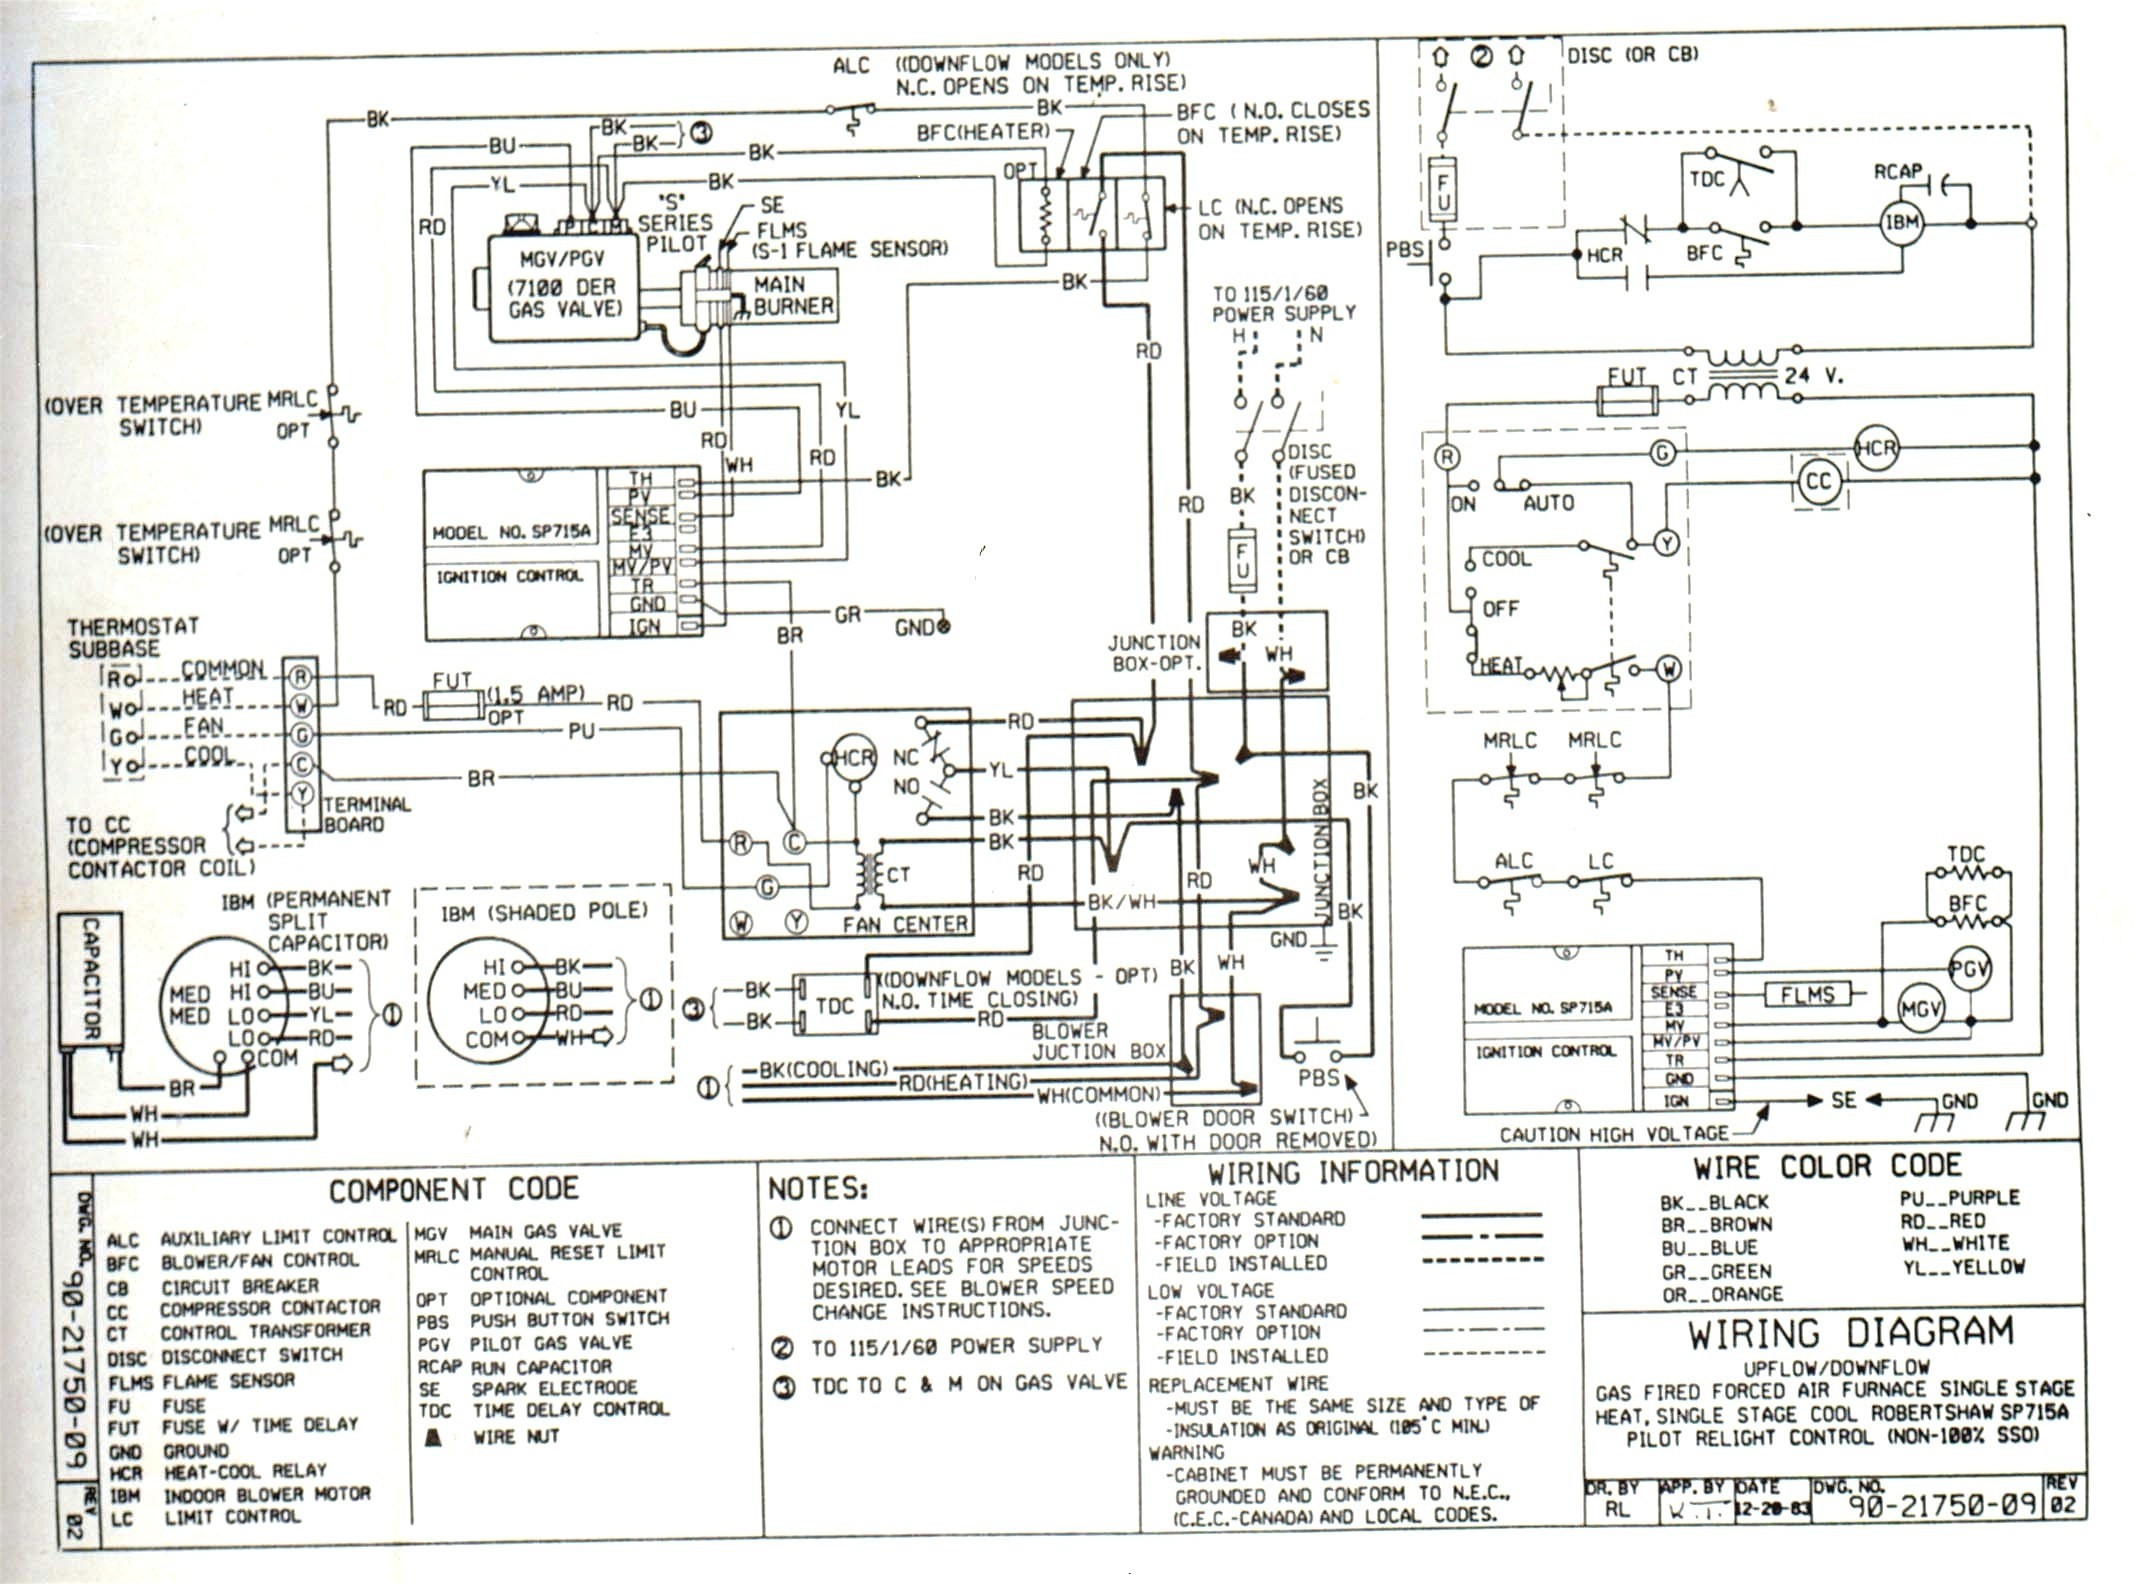 Wiring Manual PDF: 115 Hp Evinrude Wiring Diagram Free Download